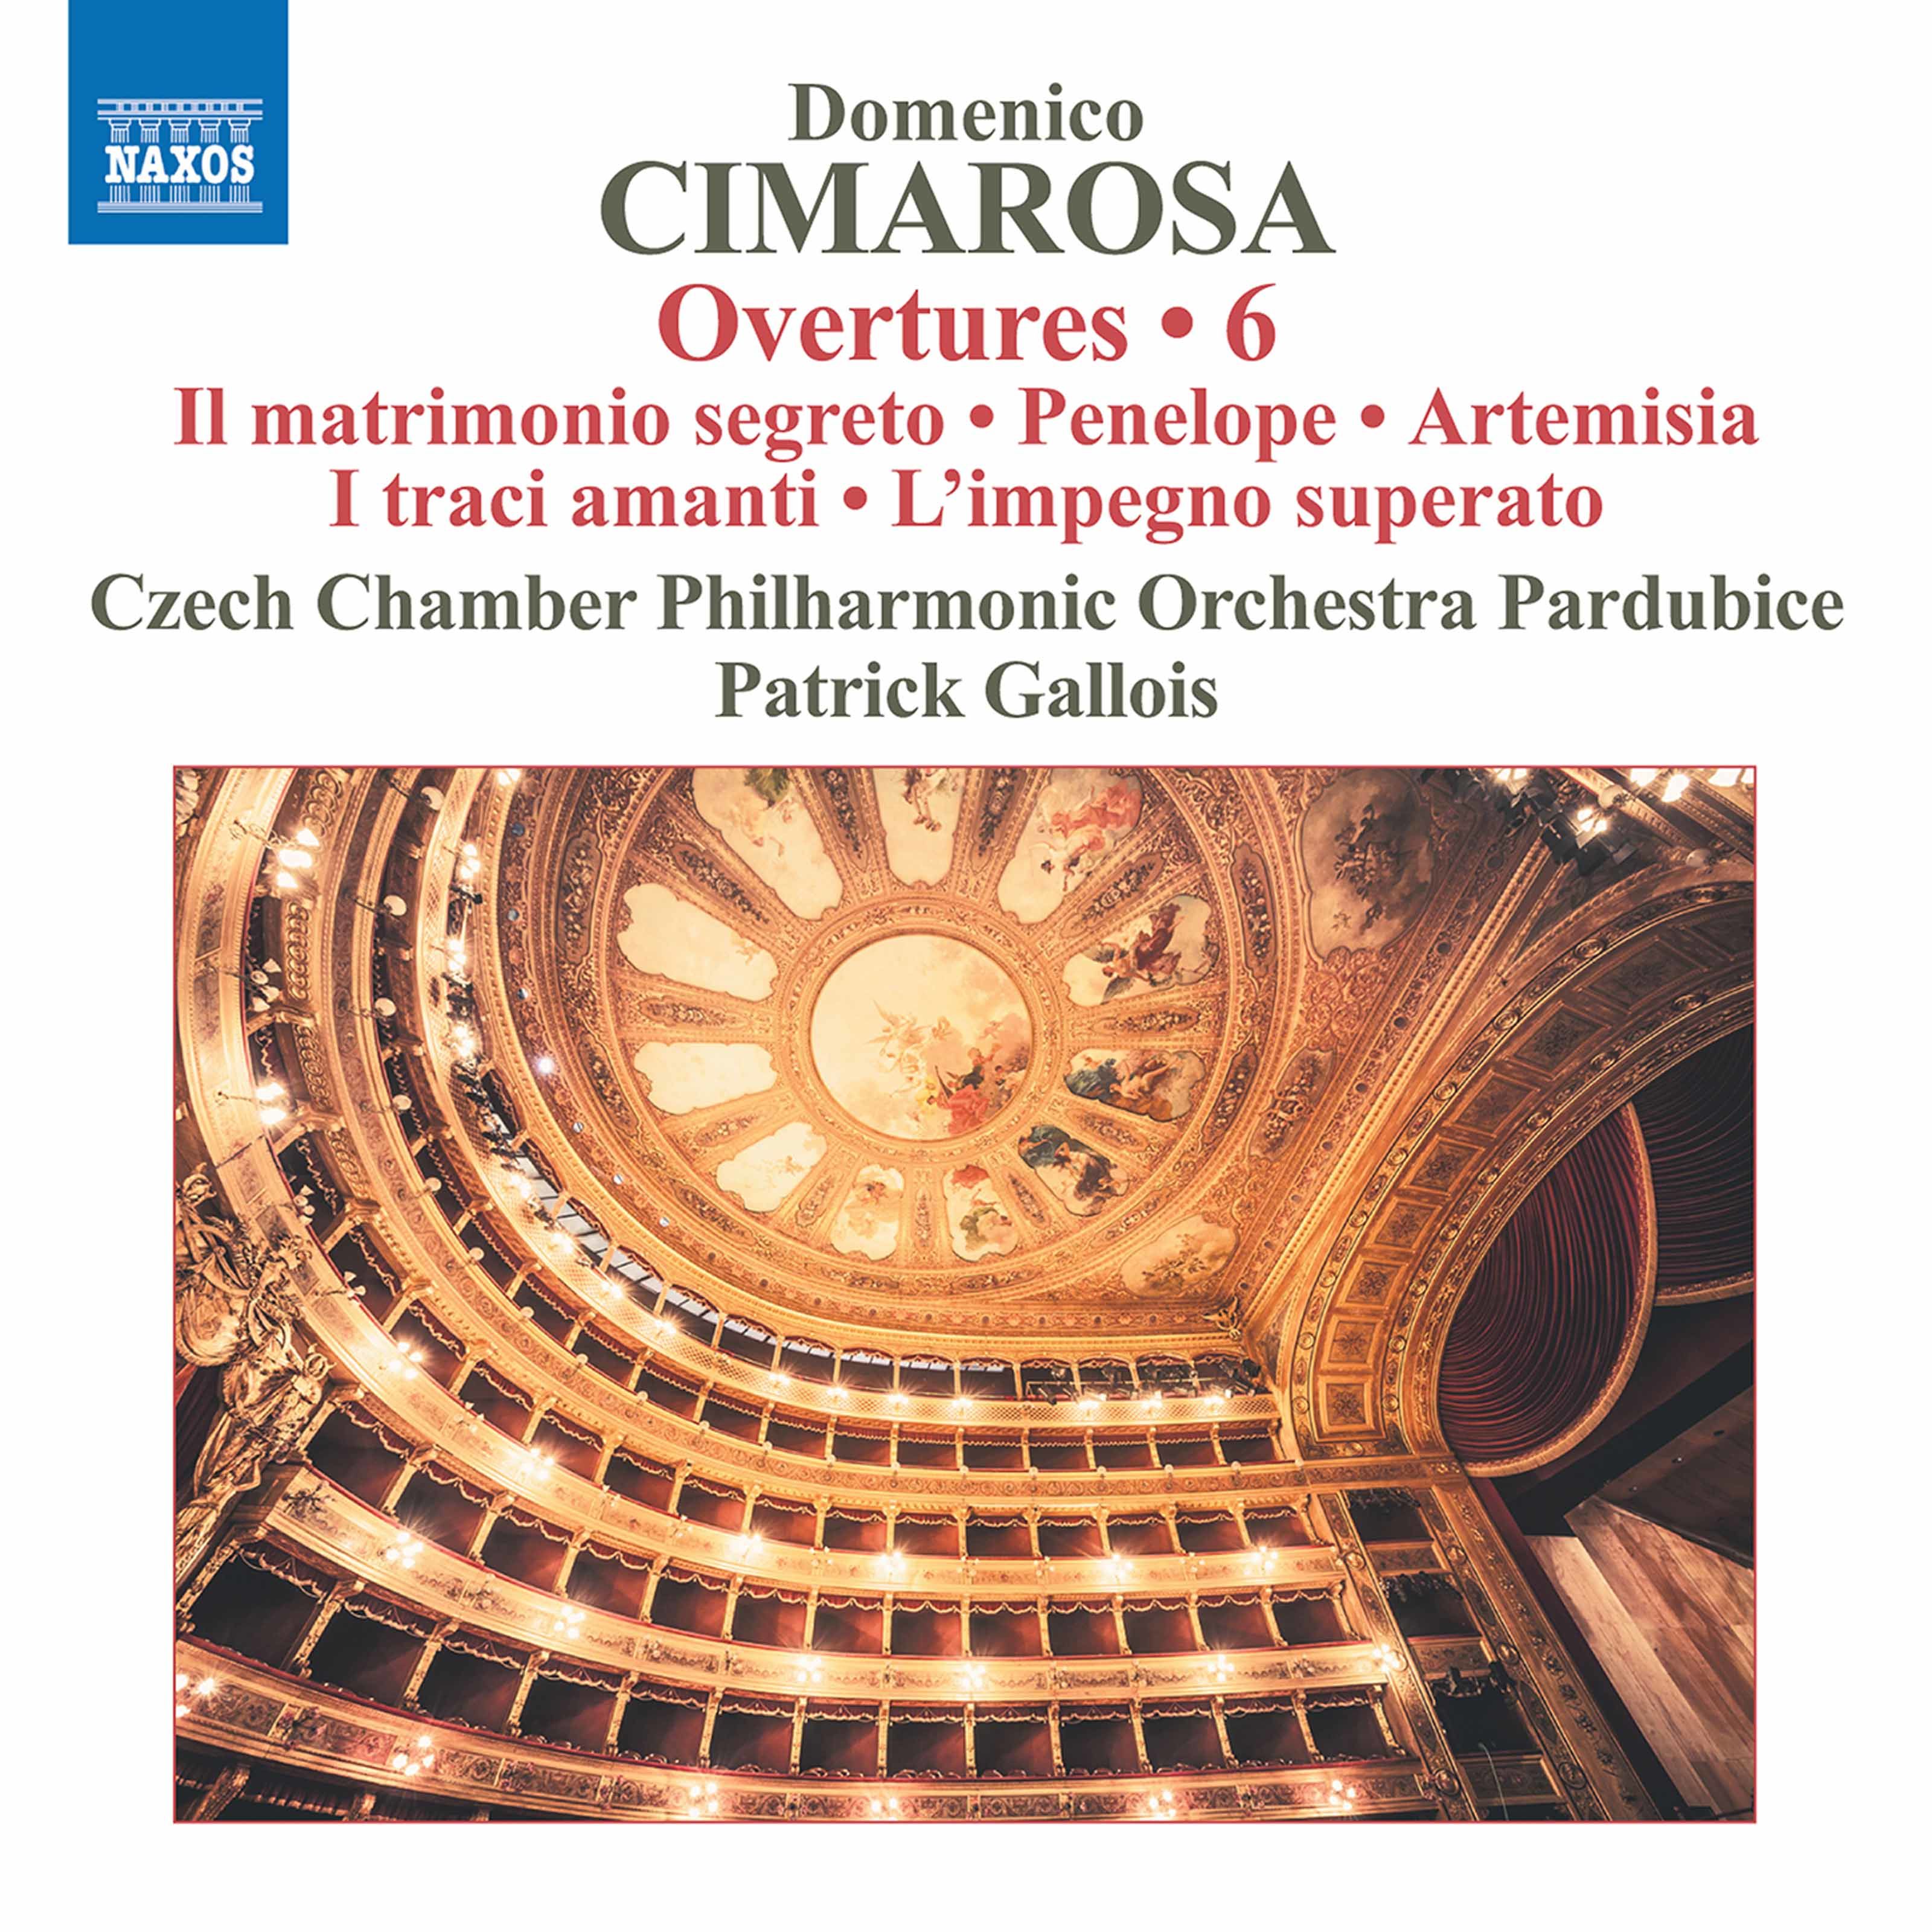 Czech Chamber Philharmonic Orchestra Pardubice, Patrick Gallois – Cimarosa: Overtures, Vol. 6 (2020) [FLAC 24bit/96kHz]